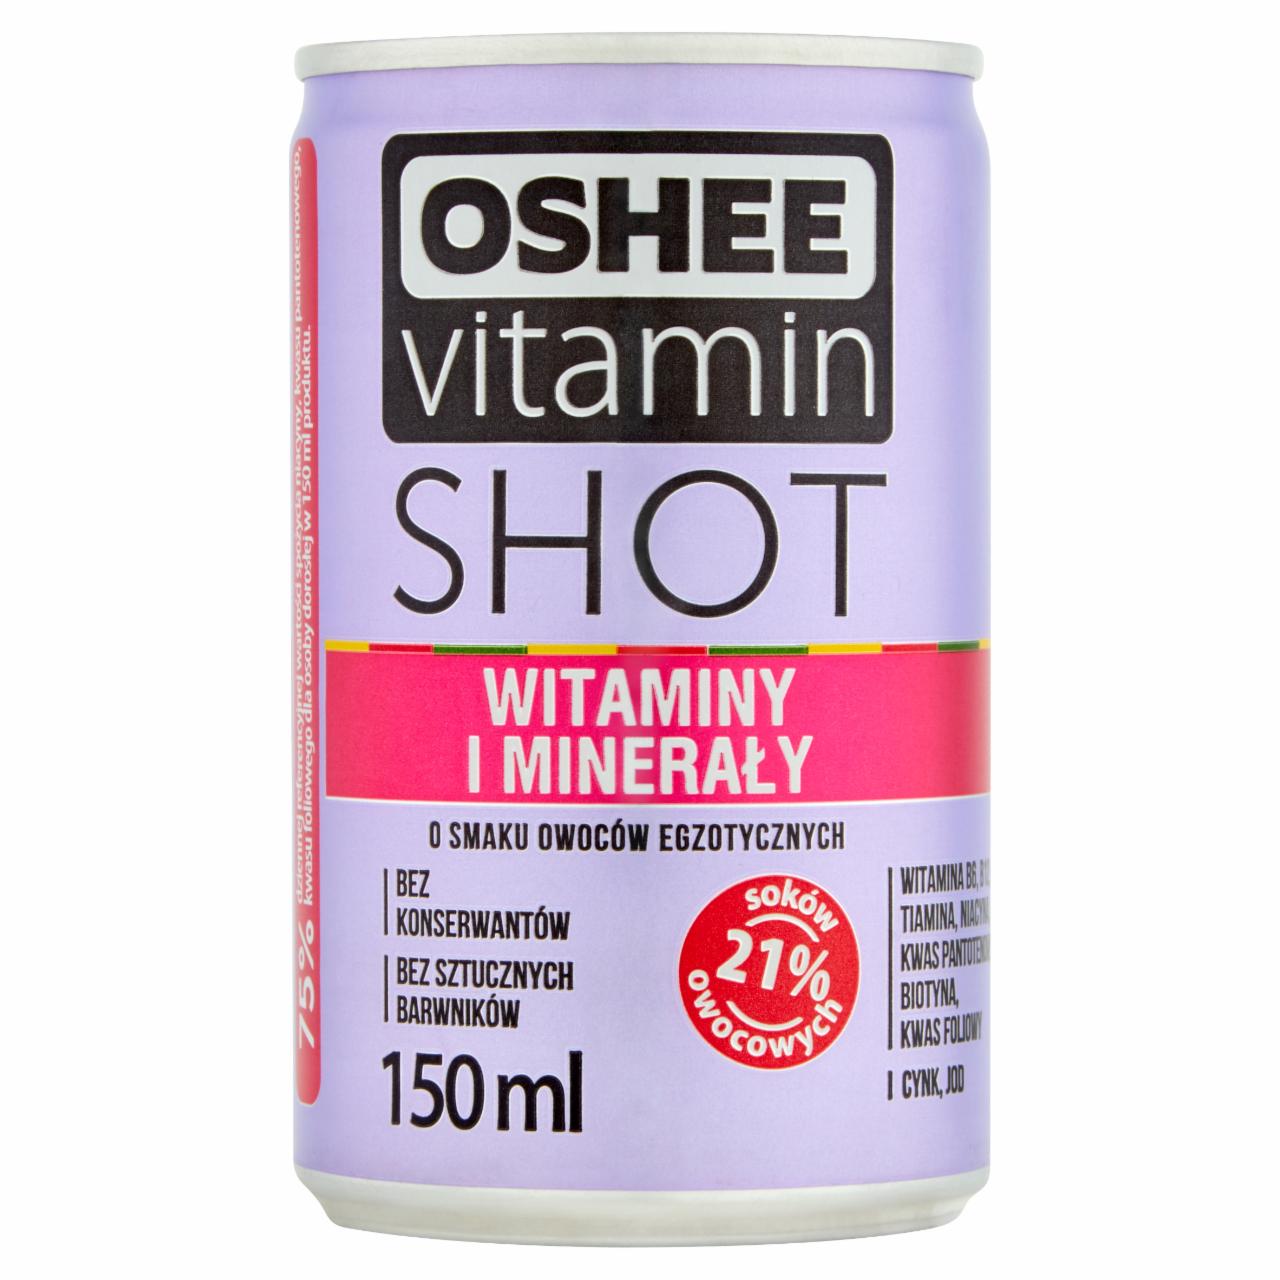 Zdjęcia - Oshee Vitamin Shot Witaminy i minerały Niegazowany napój o owoców egzotycznych 150 ml